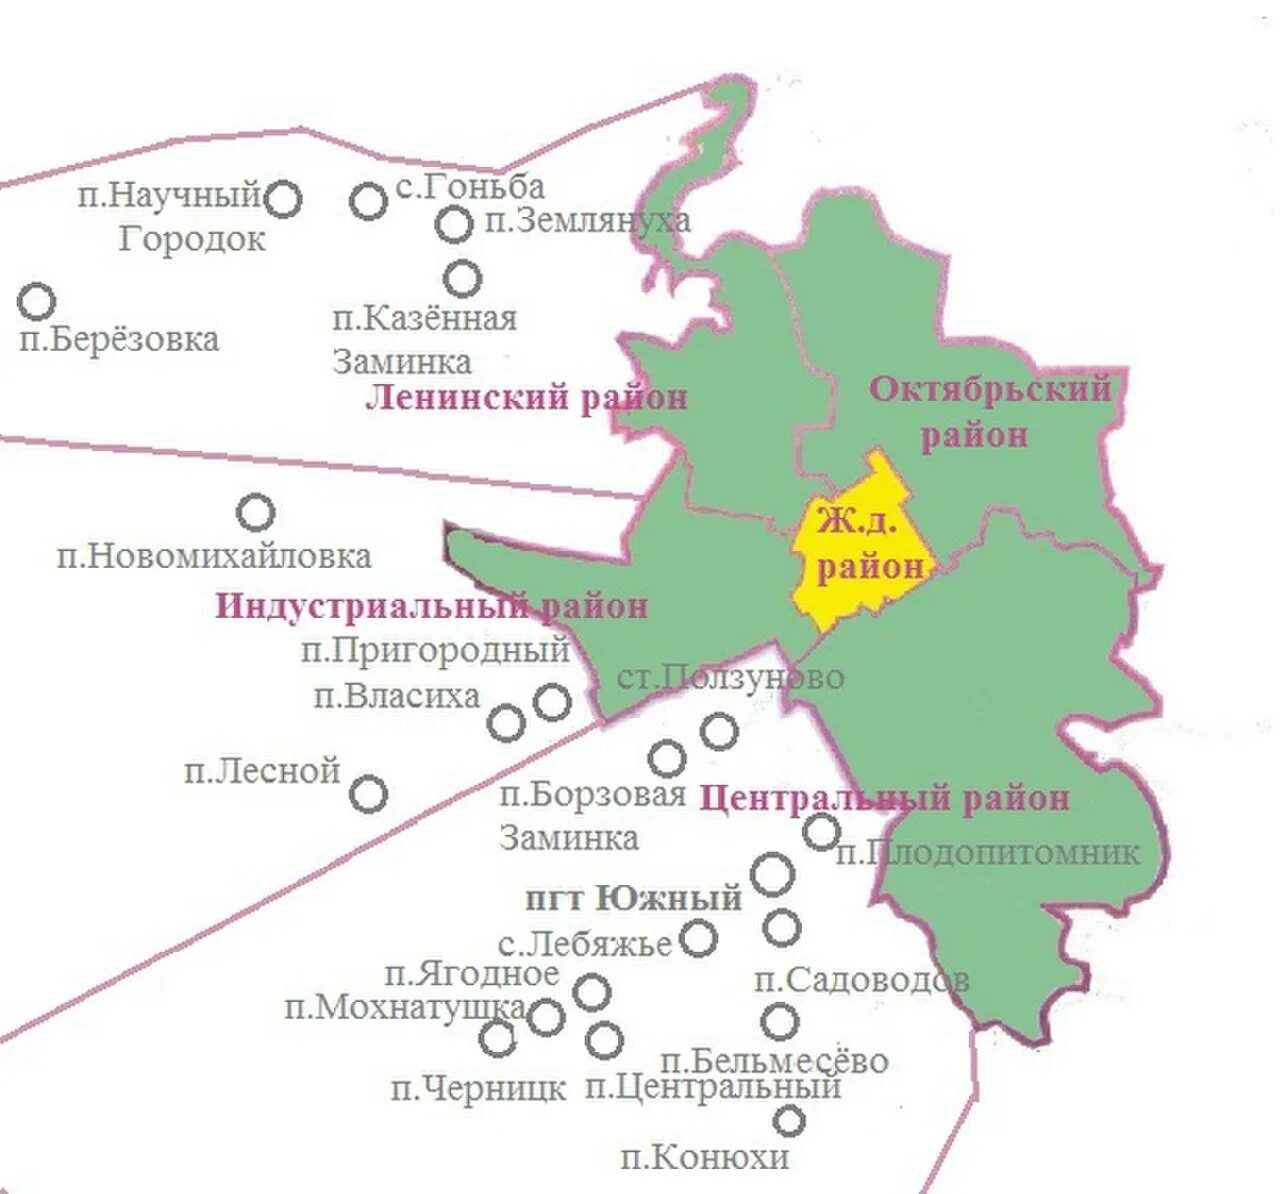 Где находится каком районе. Карта Барнаула по районам. Районы города Барнаула на карте. Карта Барнаула по районам города. Барнаул границы районов.